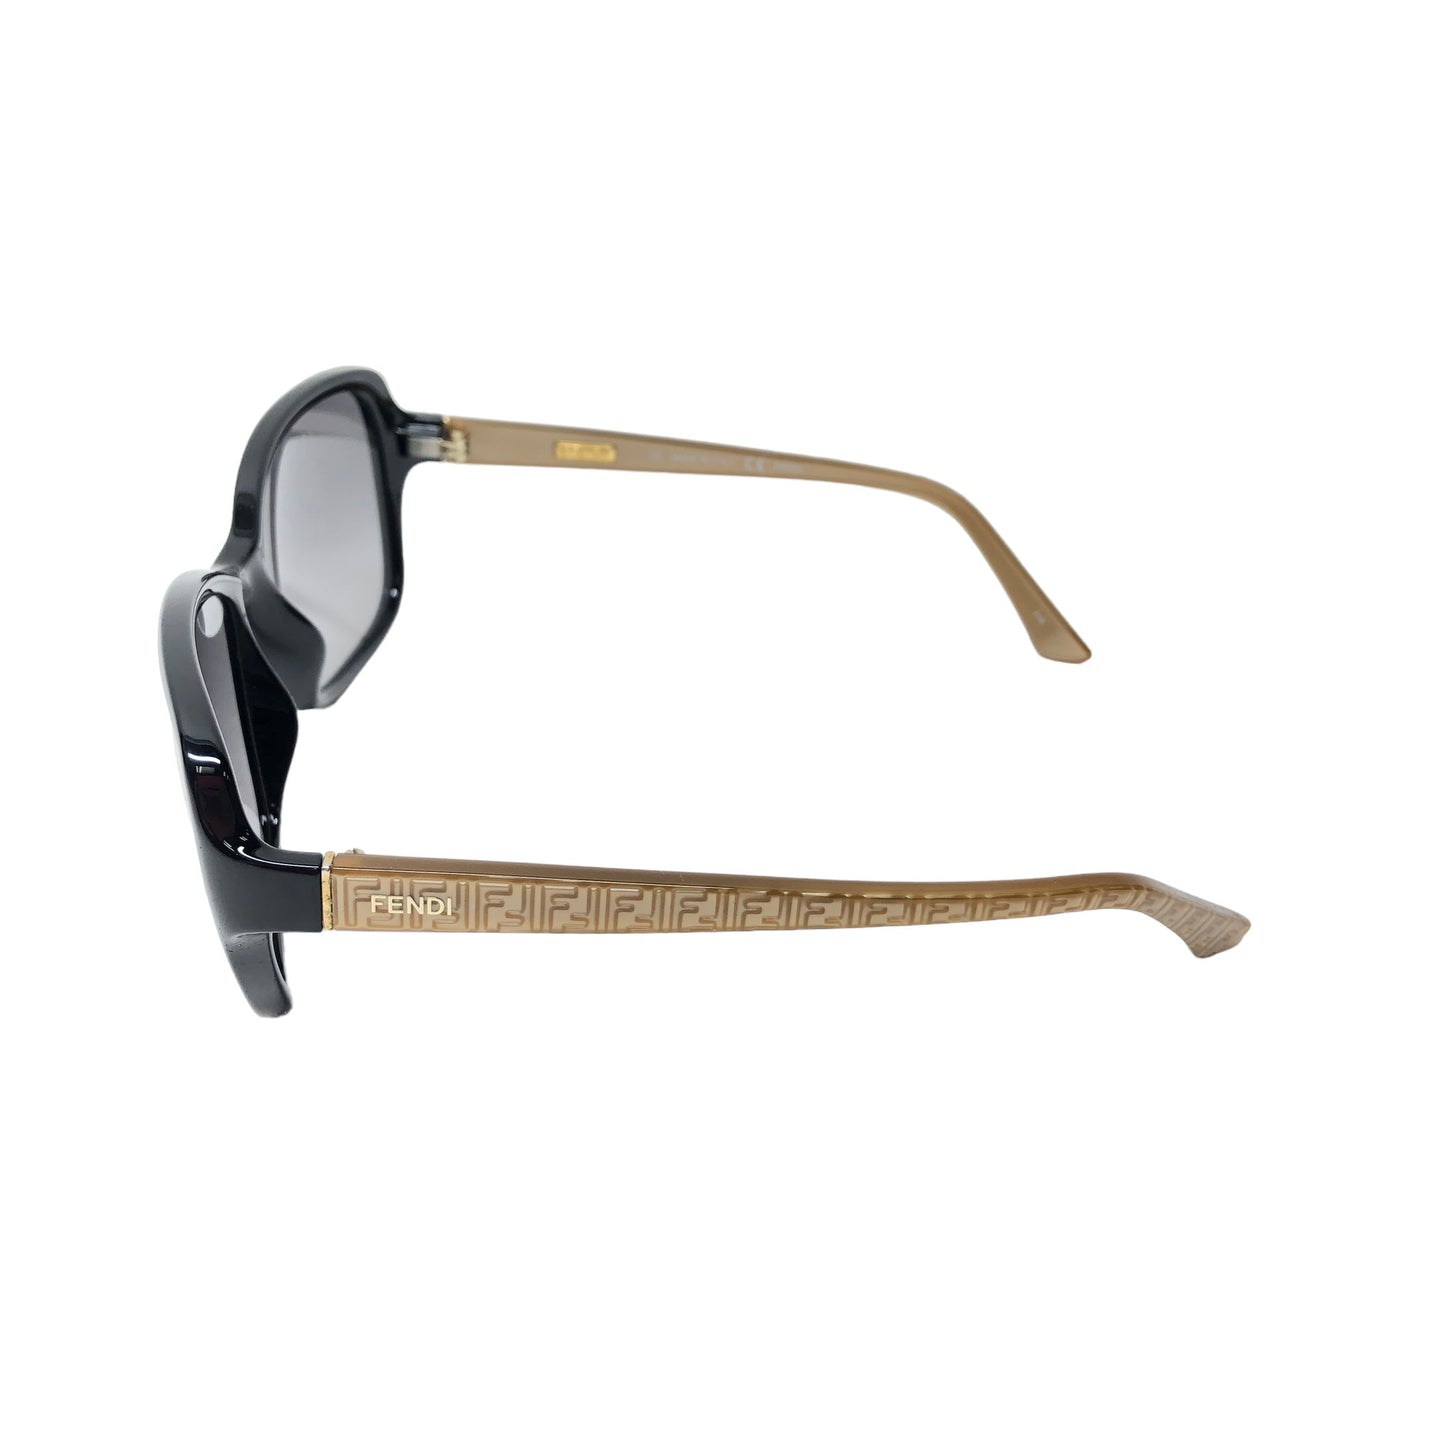 Sunglasses Luxury Designer Fendi